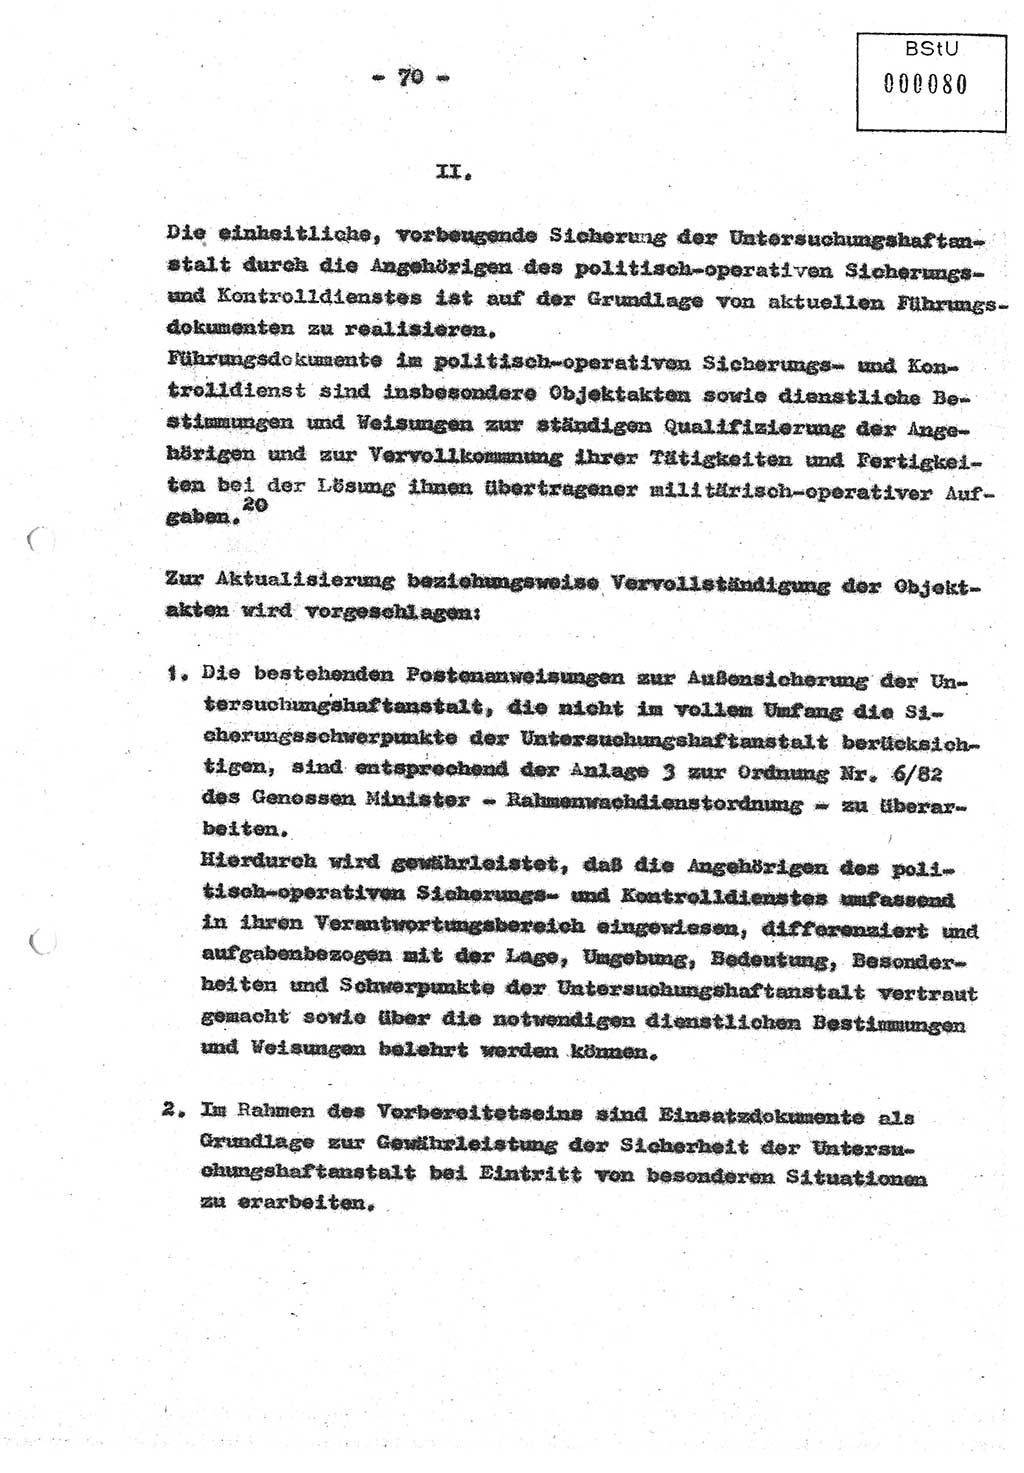 Diplomarbeit (Entwurf) Oberleutnant Peter Parke (Abt. ⅩⅣ), Ministerium für Staatssicherheit (MfS) [Deutsche Demokratische Republik (DDR)], Juristische Hochschule (JHS), Geheime Verschlußsache (GVS) o001-98/86, Potsdam 1986, Seite 80 (Dipl.-Arb. MfS DDR JHS GVS o001-98/86 1986, S. 80)